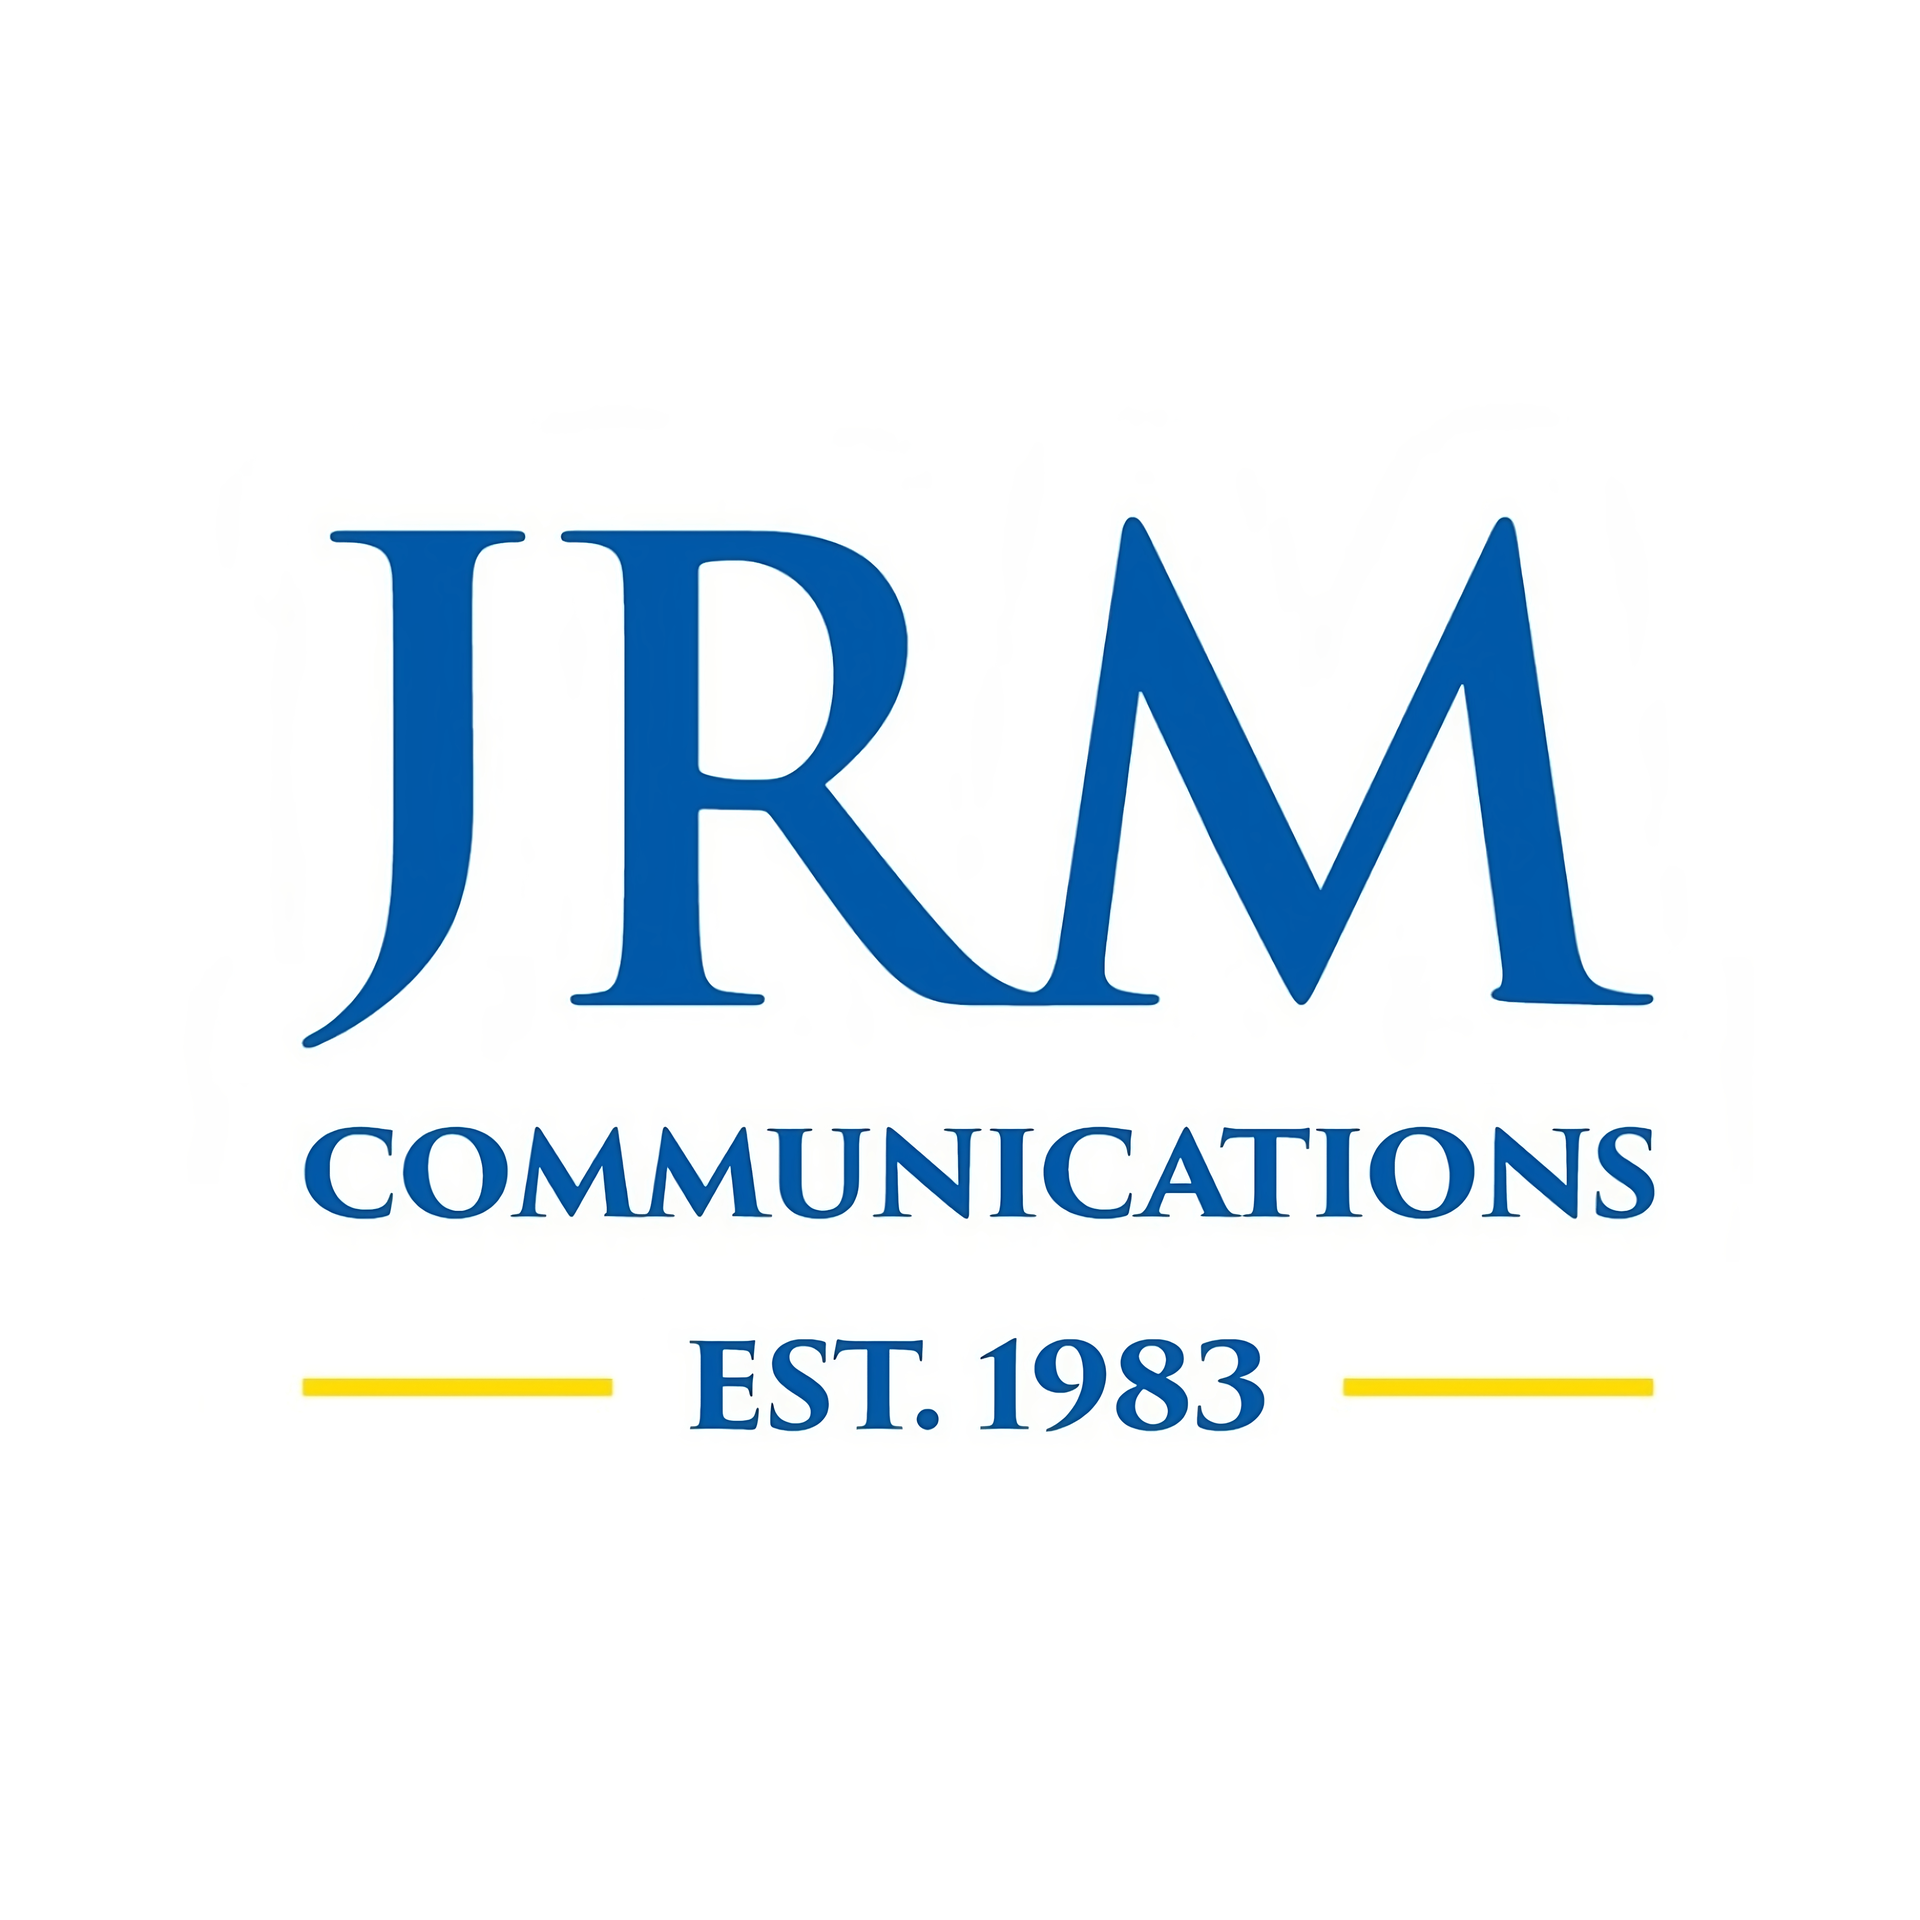 JRM for Communications